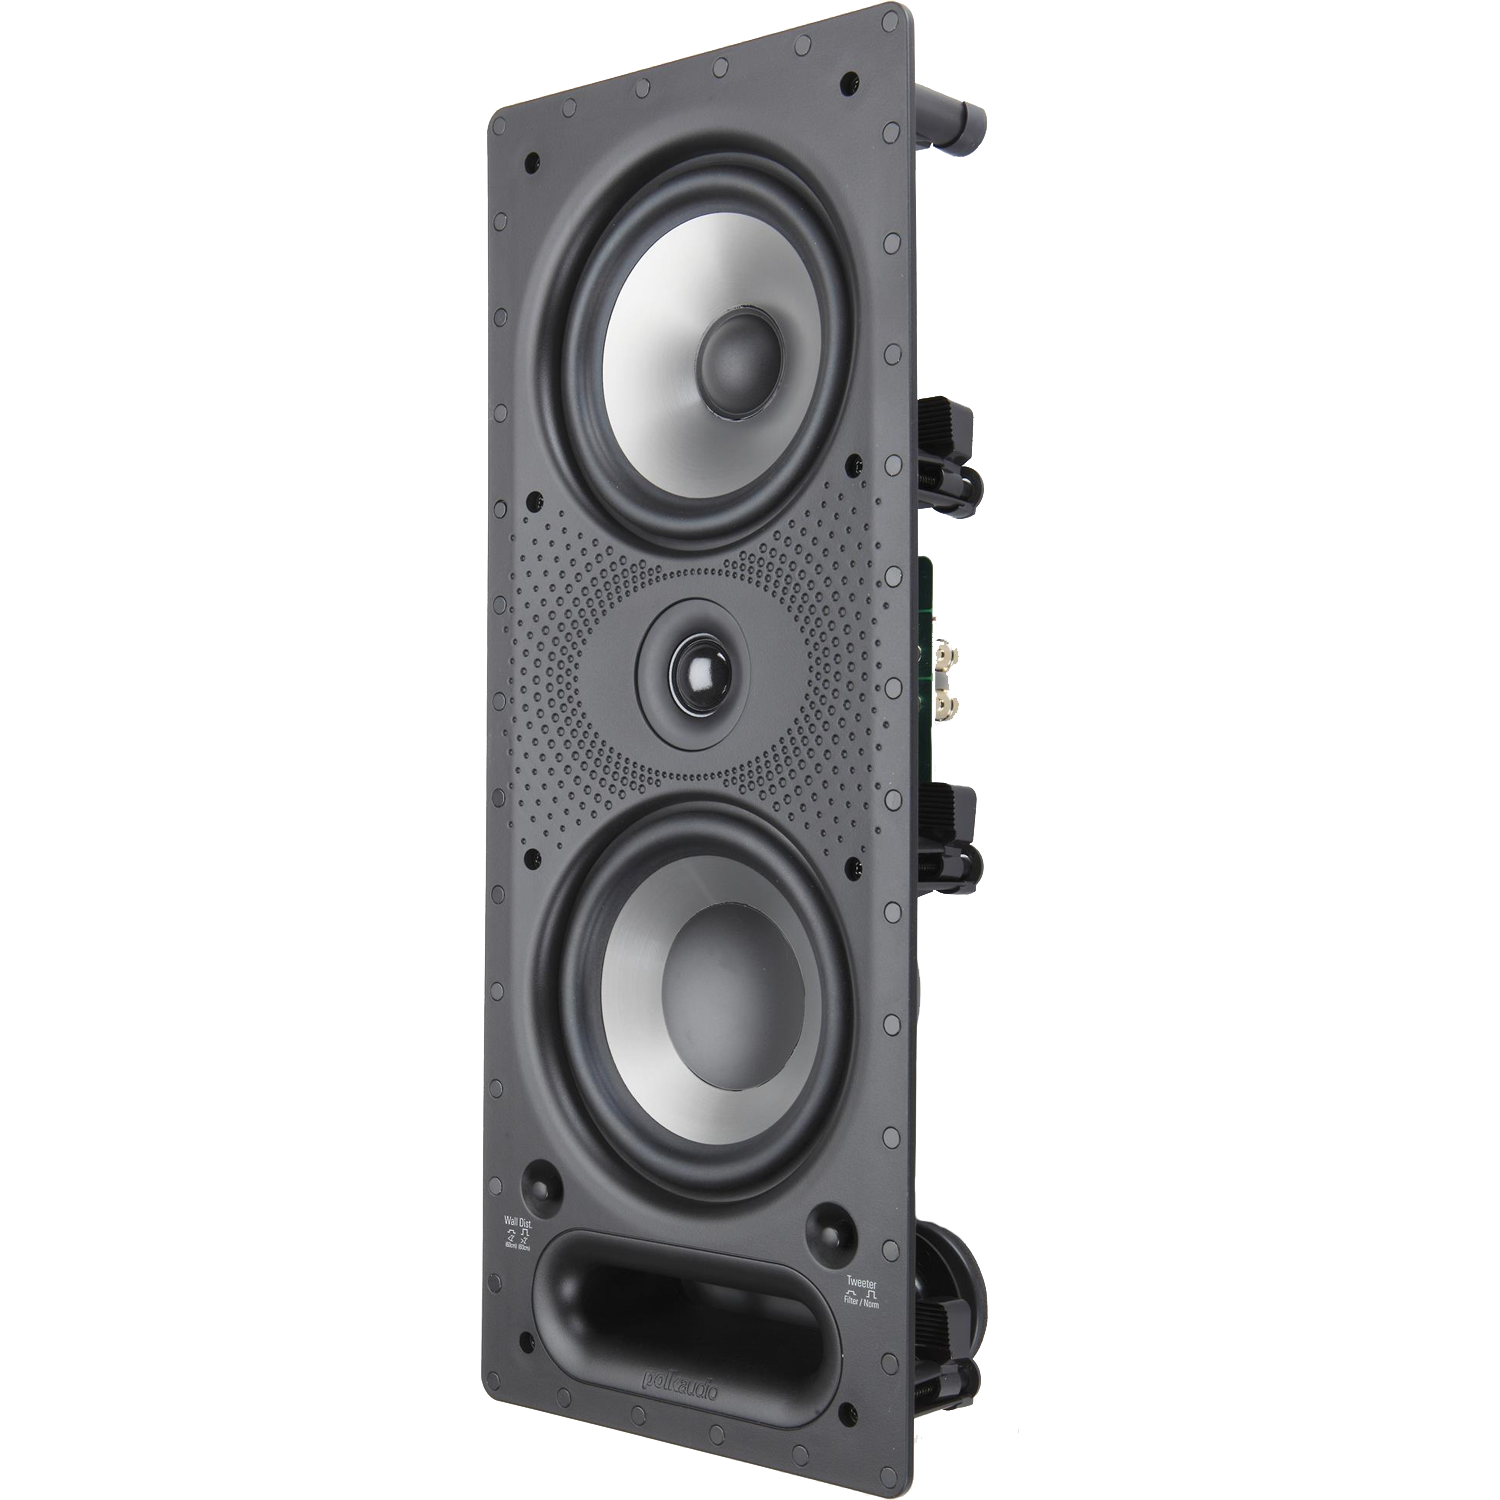 POLK AUDIO 265-RT EACH 6.5" 2-Way In-Wall LCR Speaker